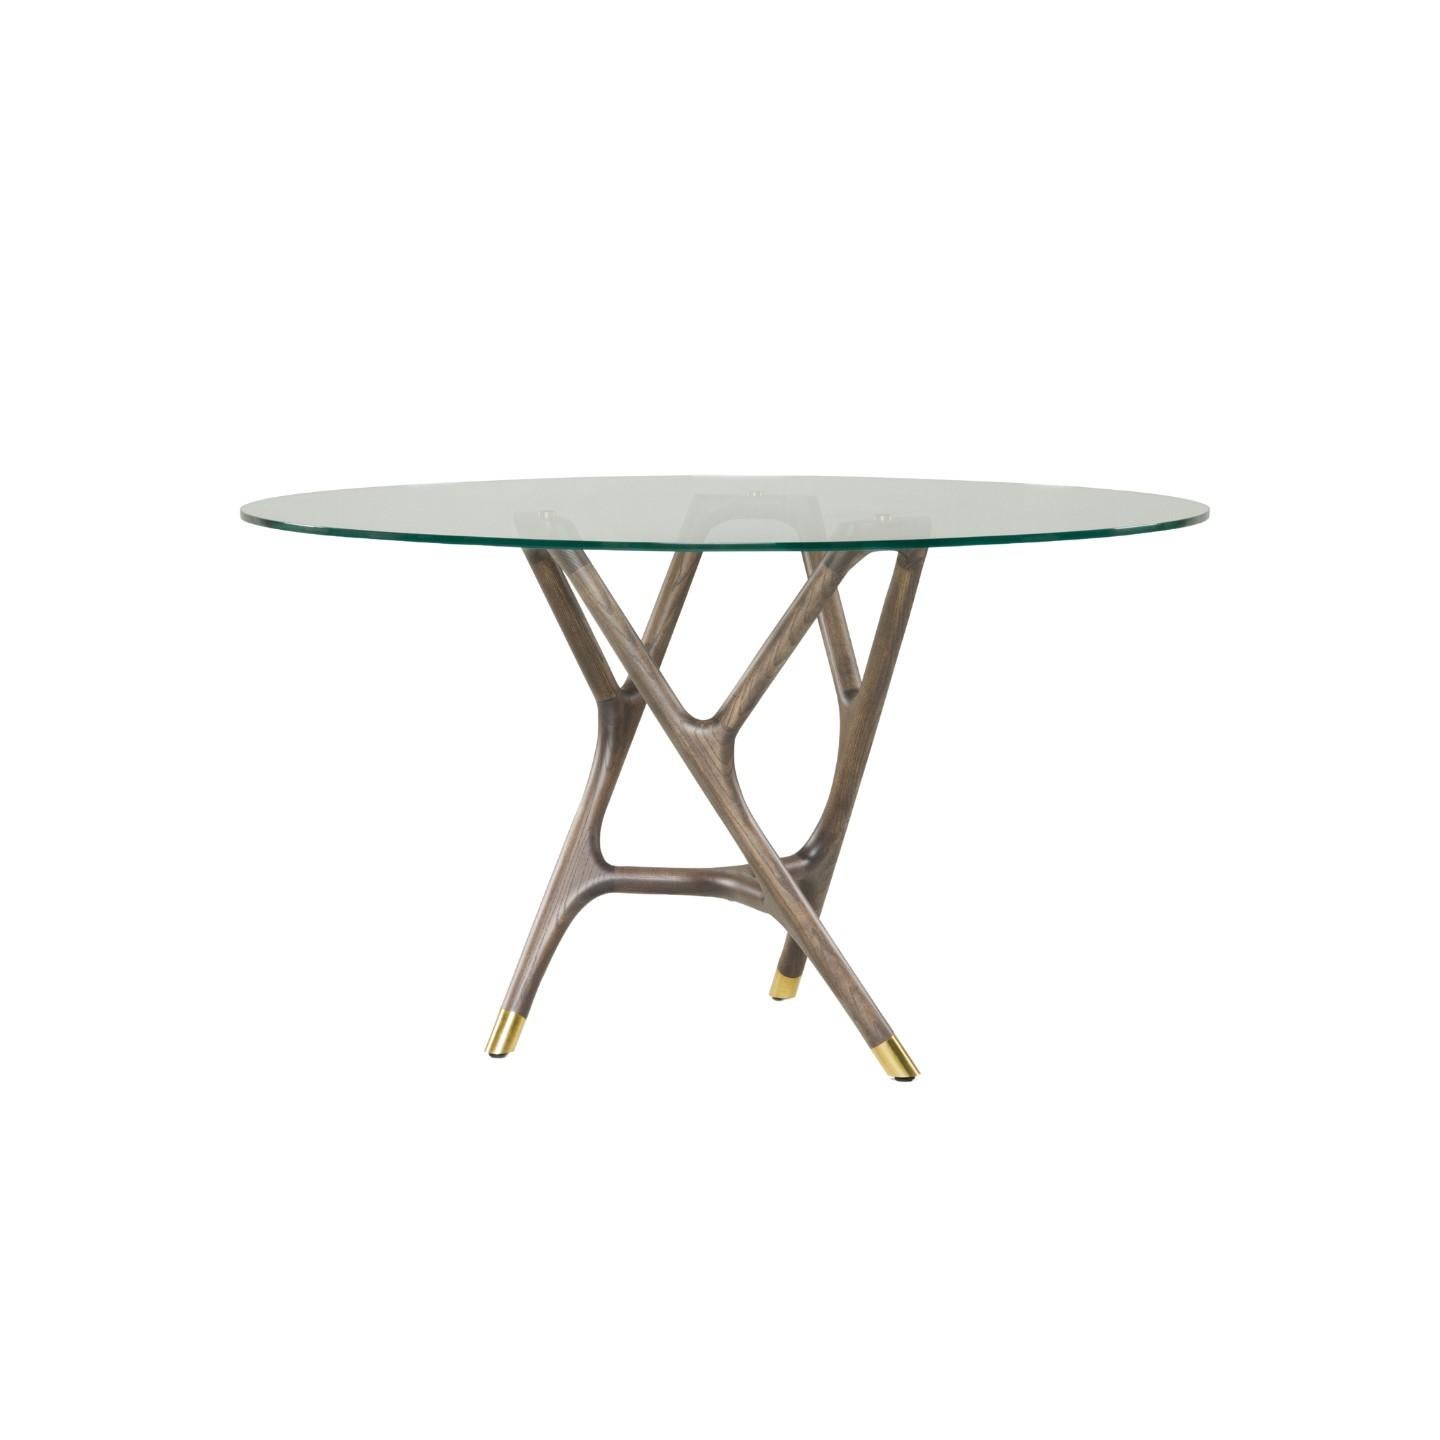 Table de salle à manger ronde Joyce de style contemporain en bois de frêne tourné avec plateau en verre et embouts en laiton.
Conçu par Libero Rutilo
disponible en diam. 140cm
 